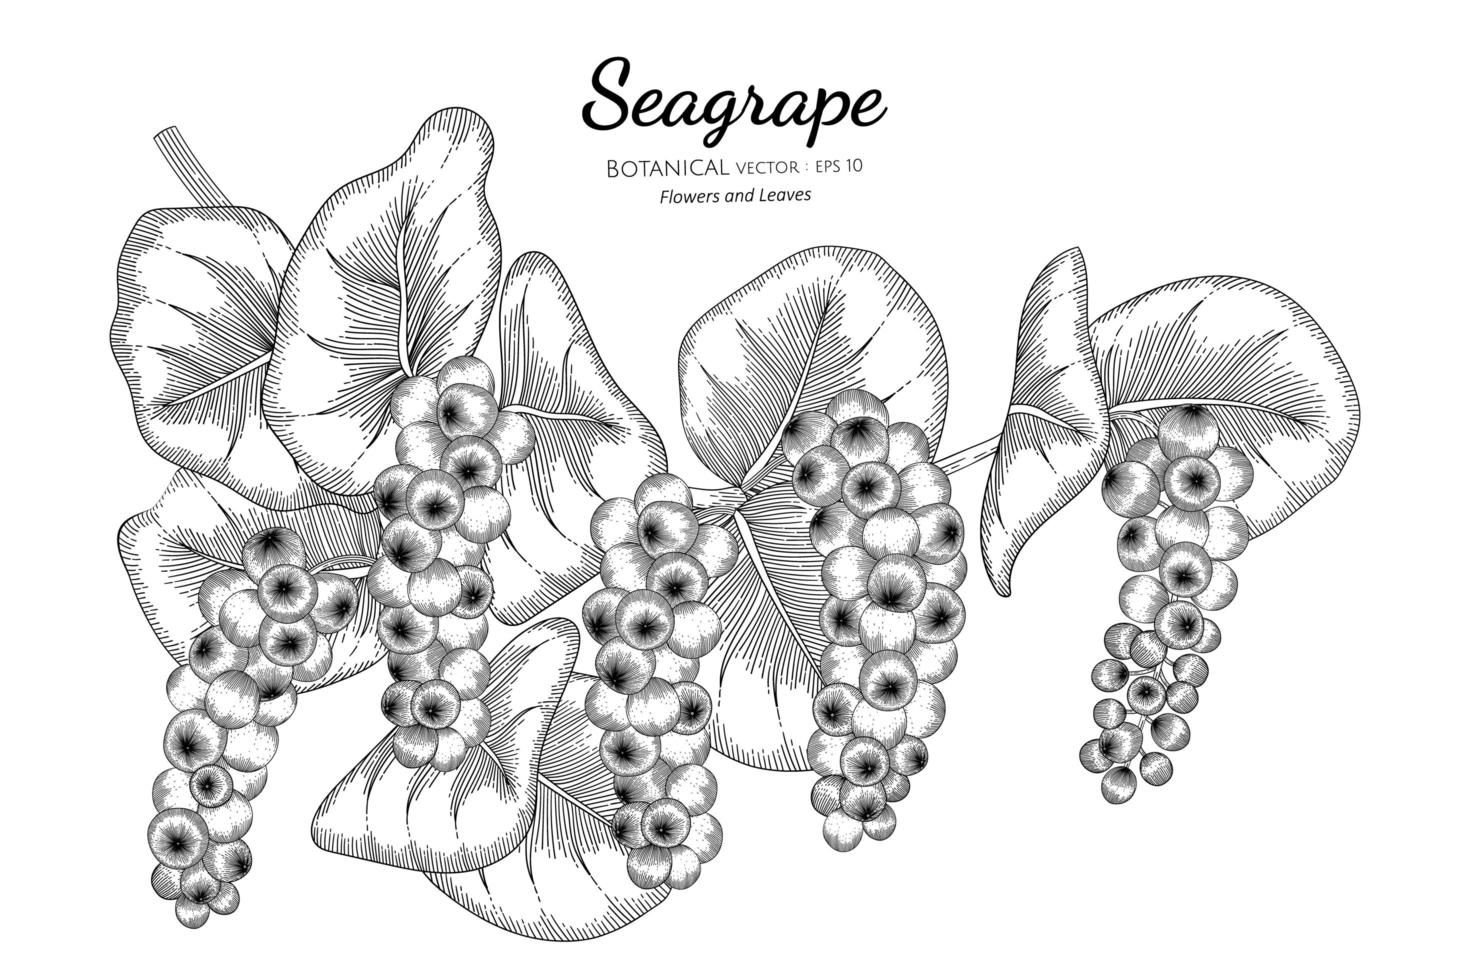 arte de linha de ramos de seagrape desenhada à mão vetor